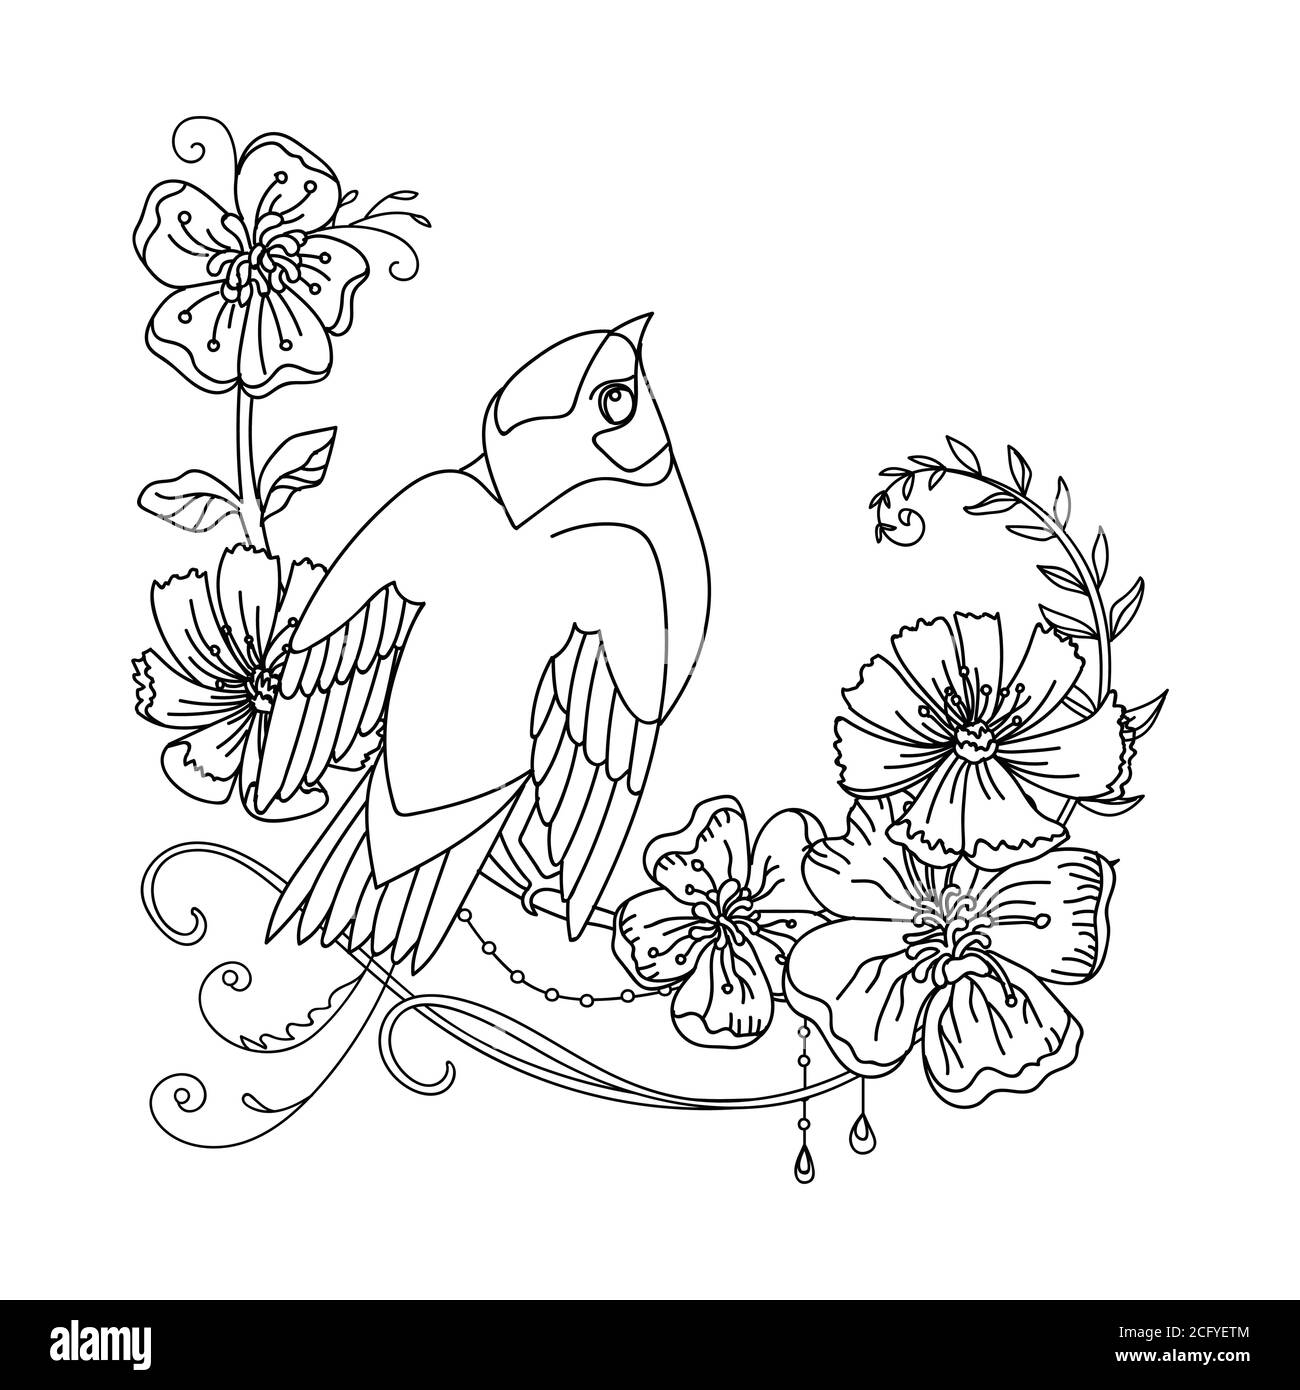 Contorno nero illustrazione uccello e fiori. Immagine vettoriale a disegno lineare isolata in bianco. Immagine monocromatica disegnata a mano vettoriale per libro da colorare, mer Illustrazione Vettoriale